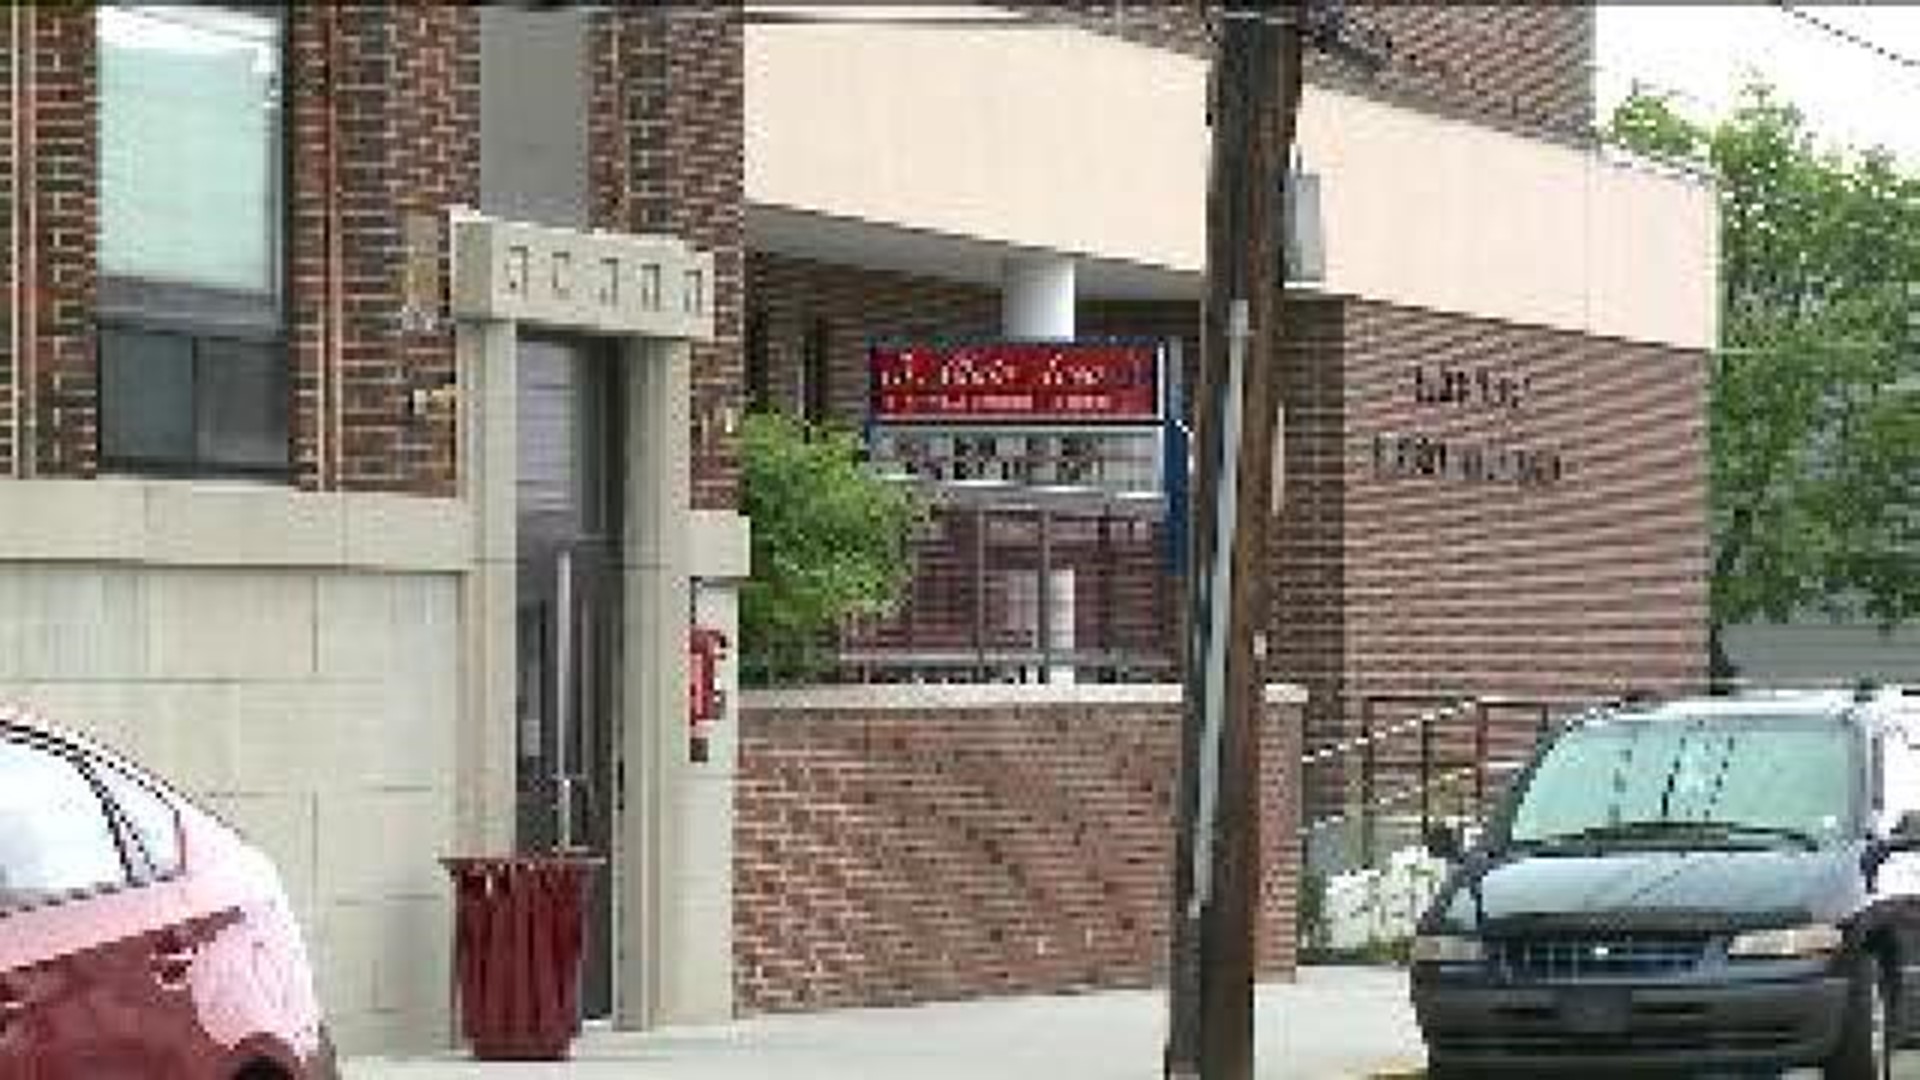 Saint Clair School Programs Suspended, Teachers Furloughed